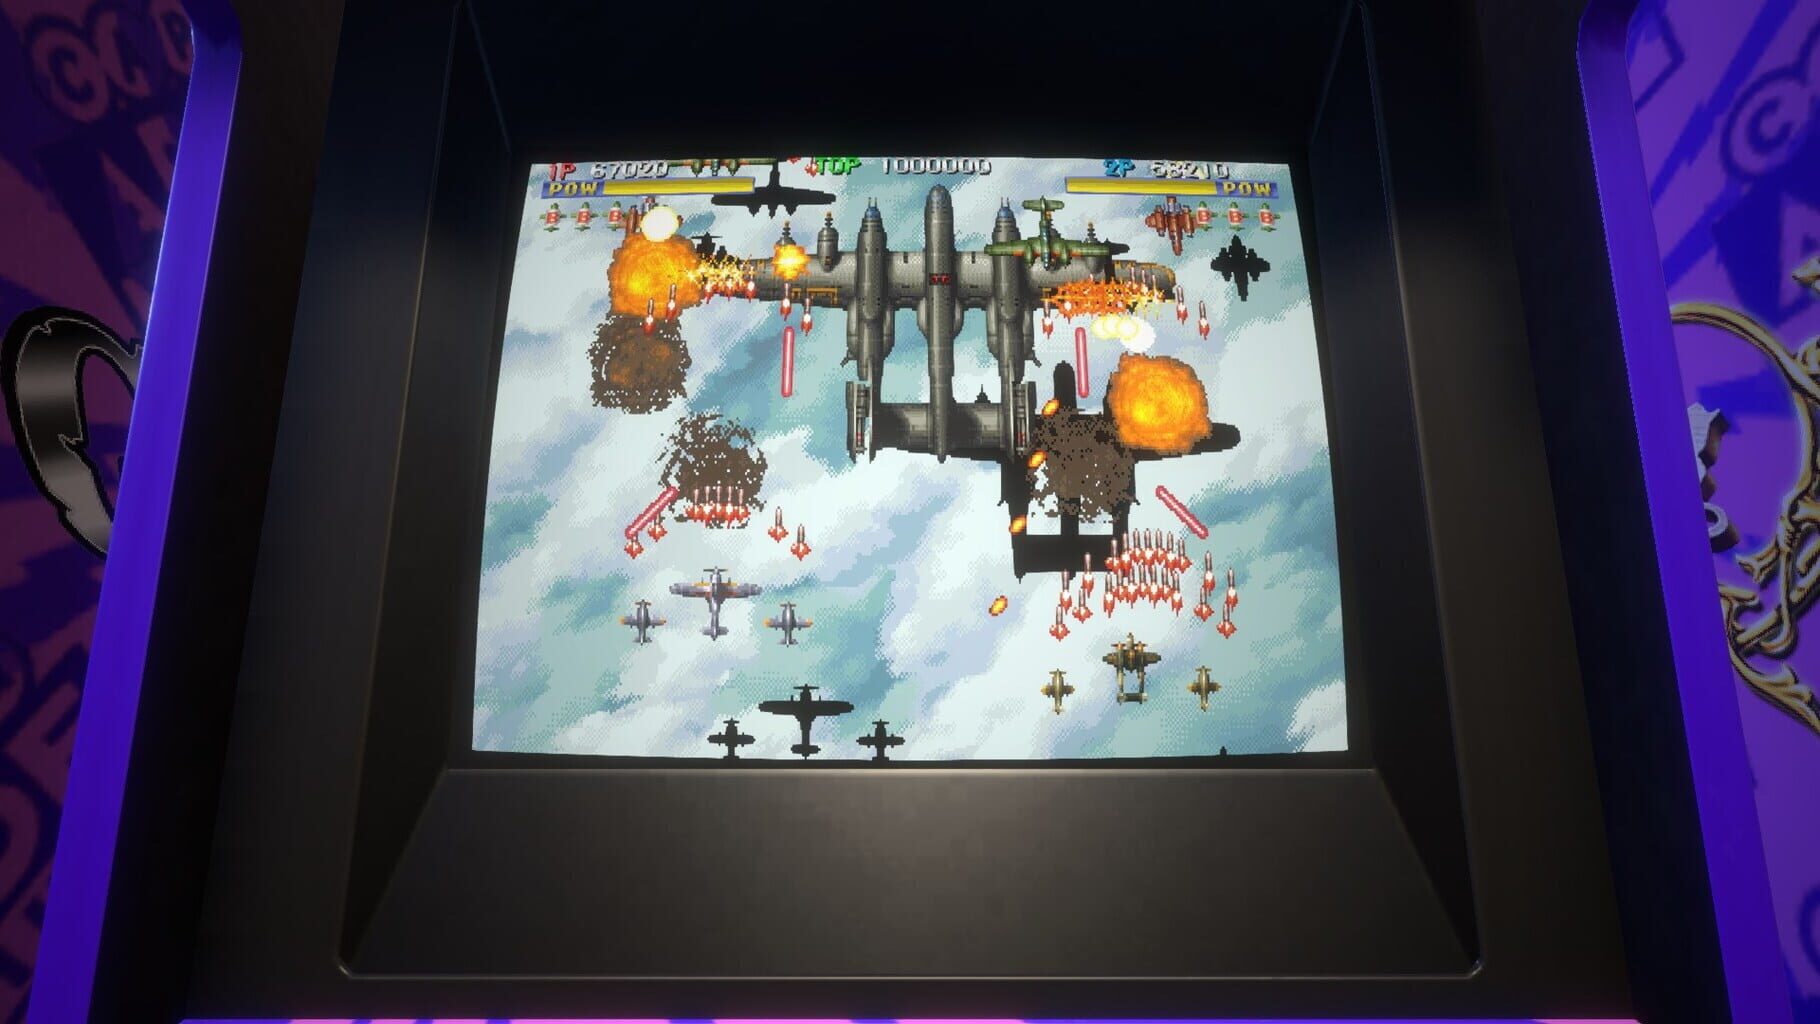 Capcom Arcade Stadium Pack 3: Arcade Evolution screenshot